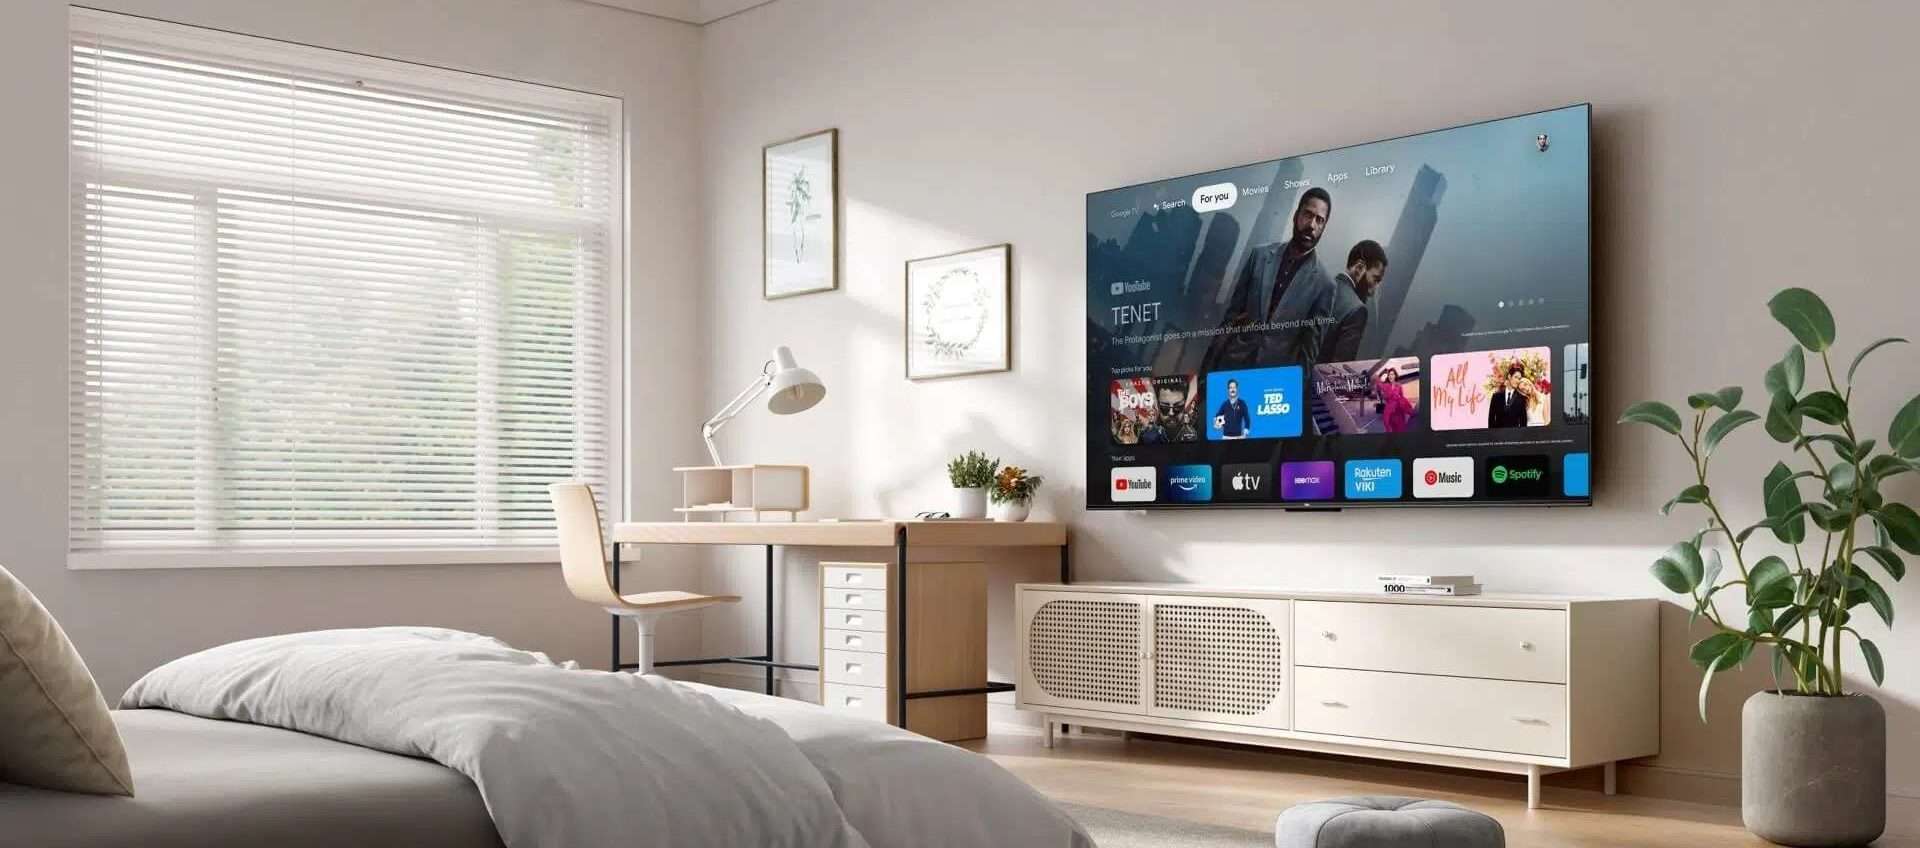 Smart TV da 55 pollici in offerta a 349€: è possibile con QUEST'OFFERTA di Amazon